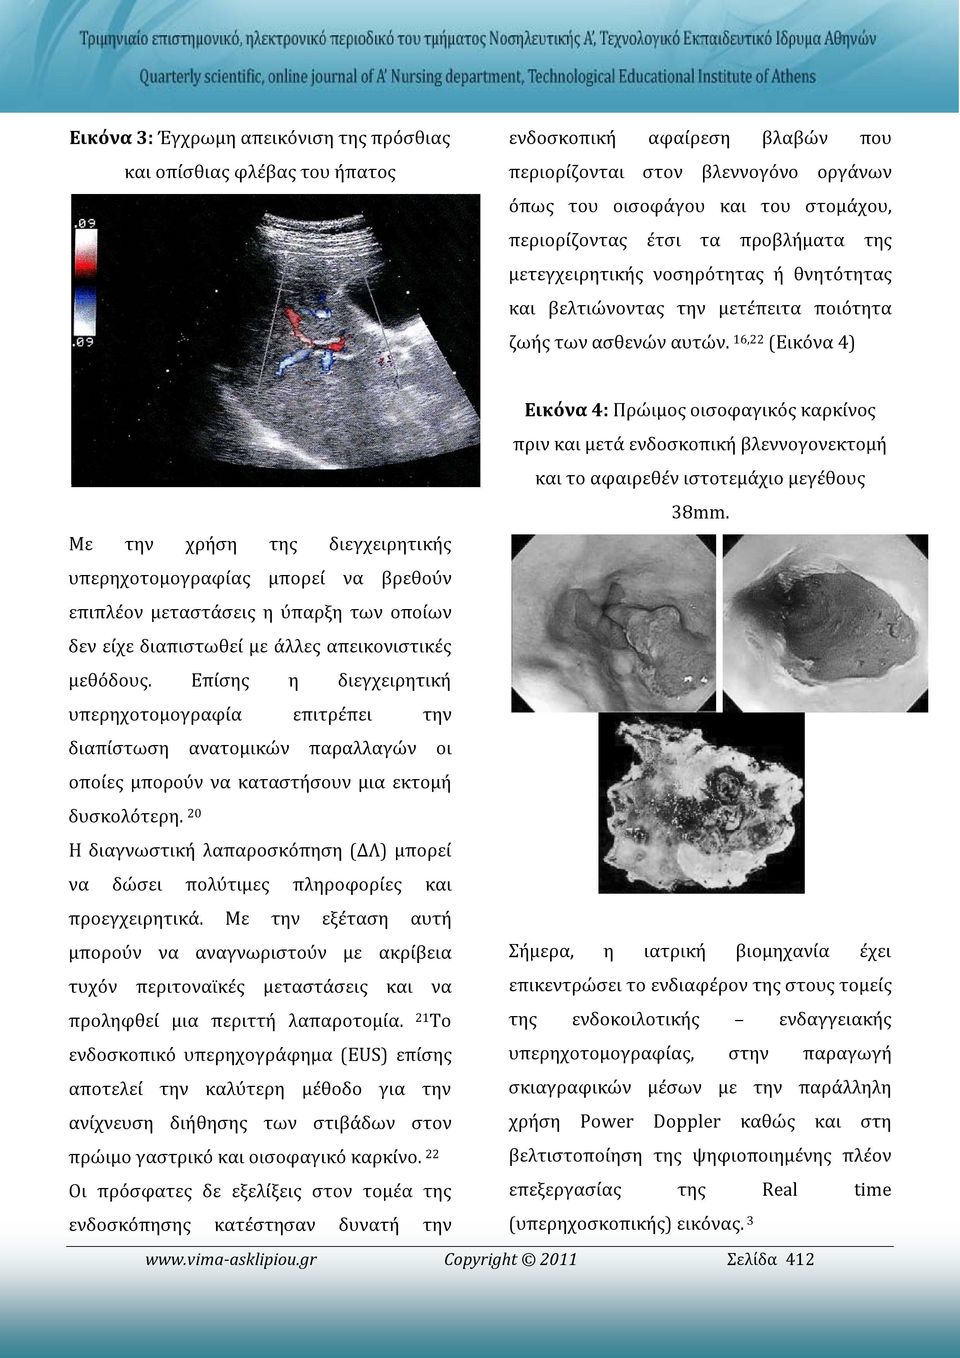 16,22 (Εικόνα 4) Εικόνα 4: Πρώιμος οισοφαγικός καρκίνος πριν και μετά ενδοσκοπική βλεννογονεκτομή και το αφαιρεθέν ιστοτεμάχιο μεγέθους 38mm.